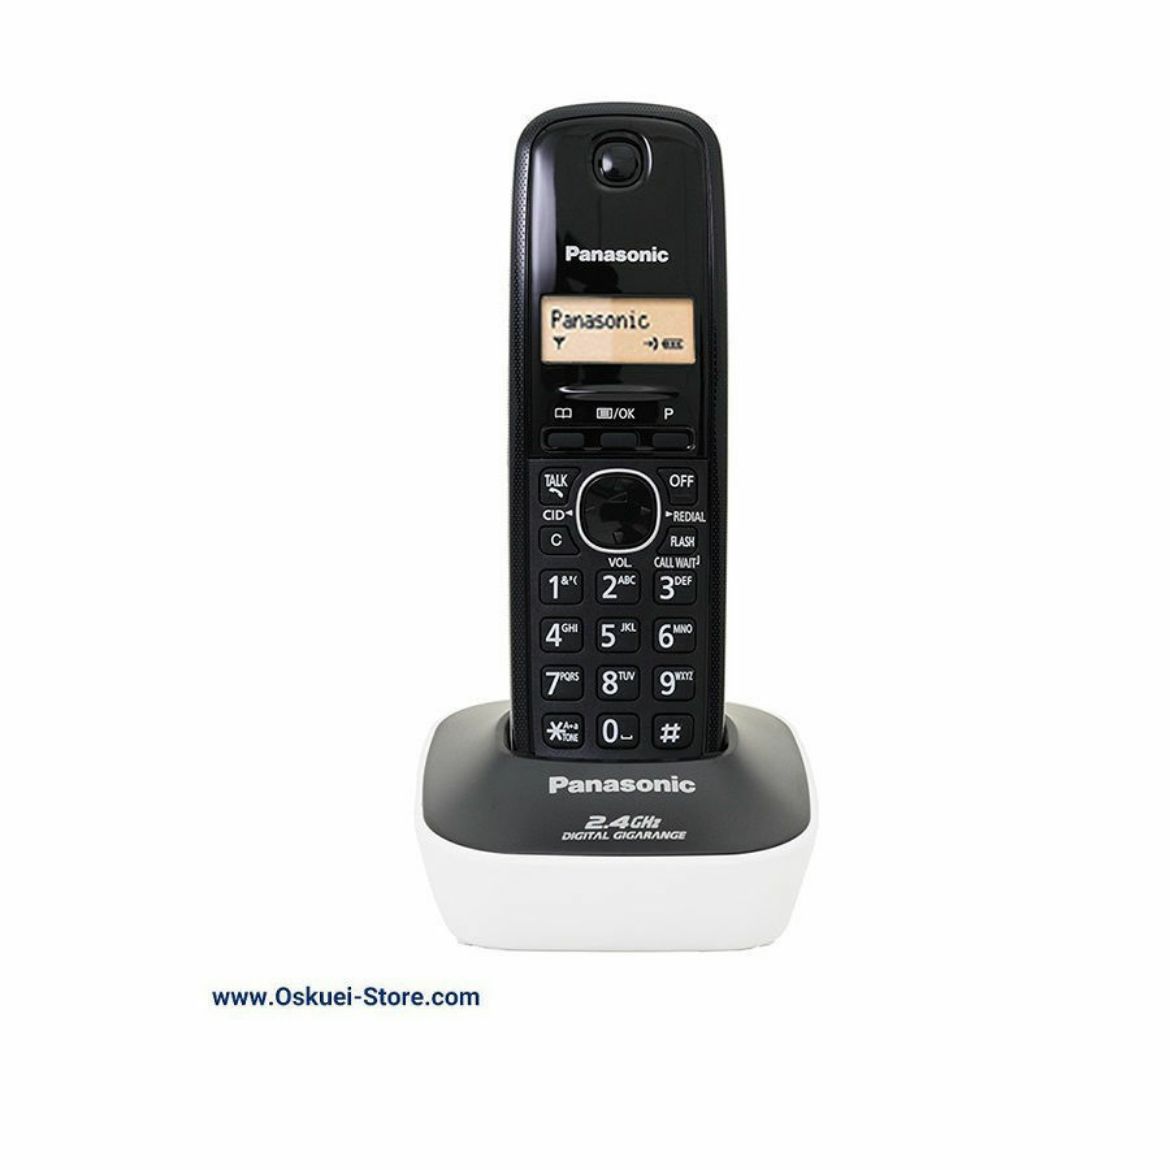 Panasonic KX-TG1611 Cordless Telephone Black With White Base 